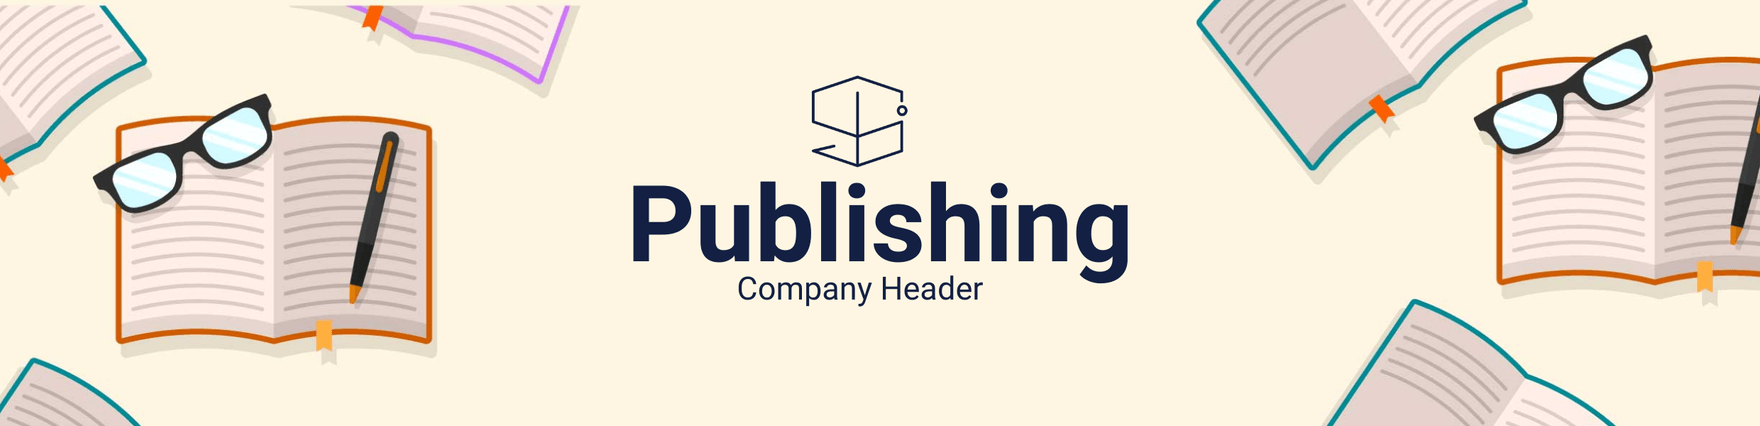 Publishing Company Header